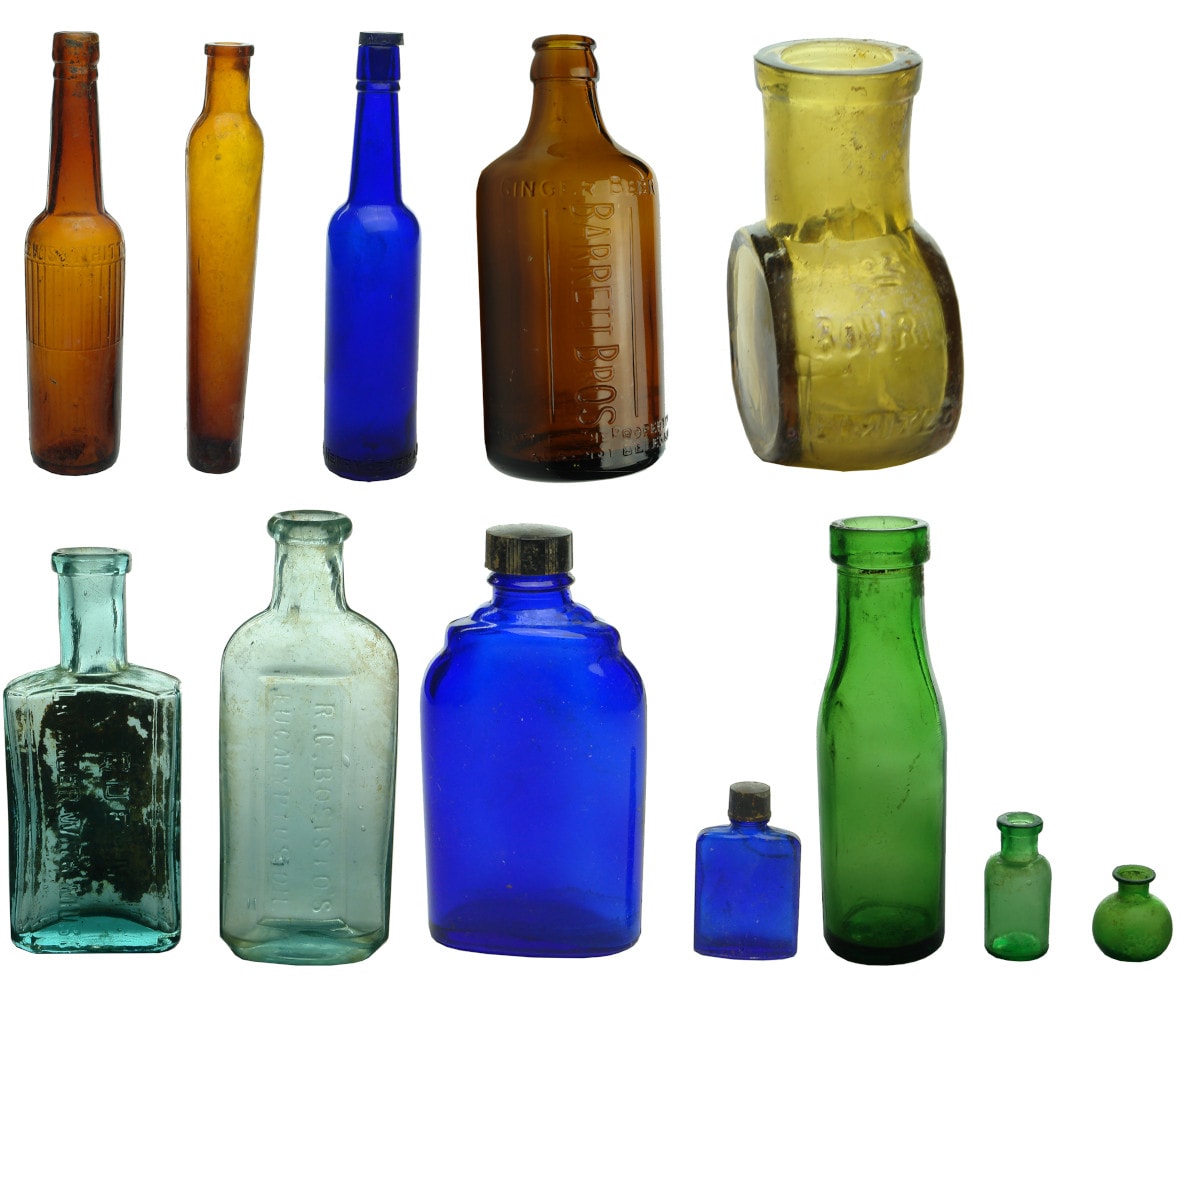 12 Bottles. Amber Lewis & Whitty Castor Oil; amber lavendar water; Henry Berry blue castor oil; Barrett glass Ginger Beer; Bovril: etc. etc.